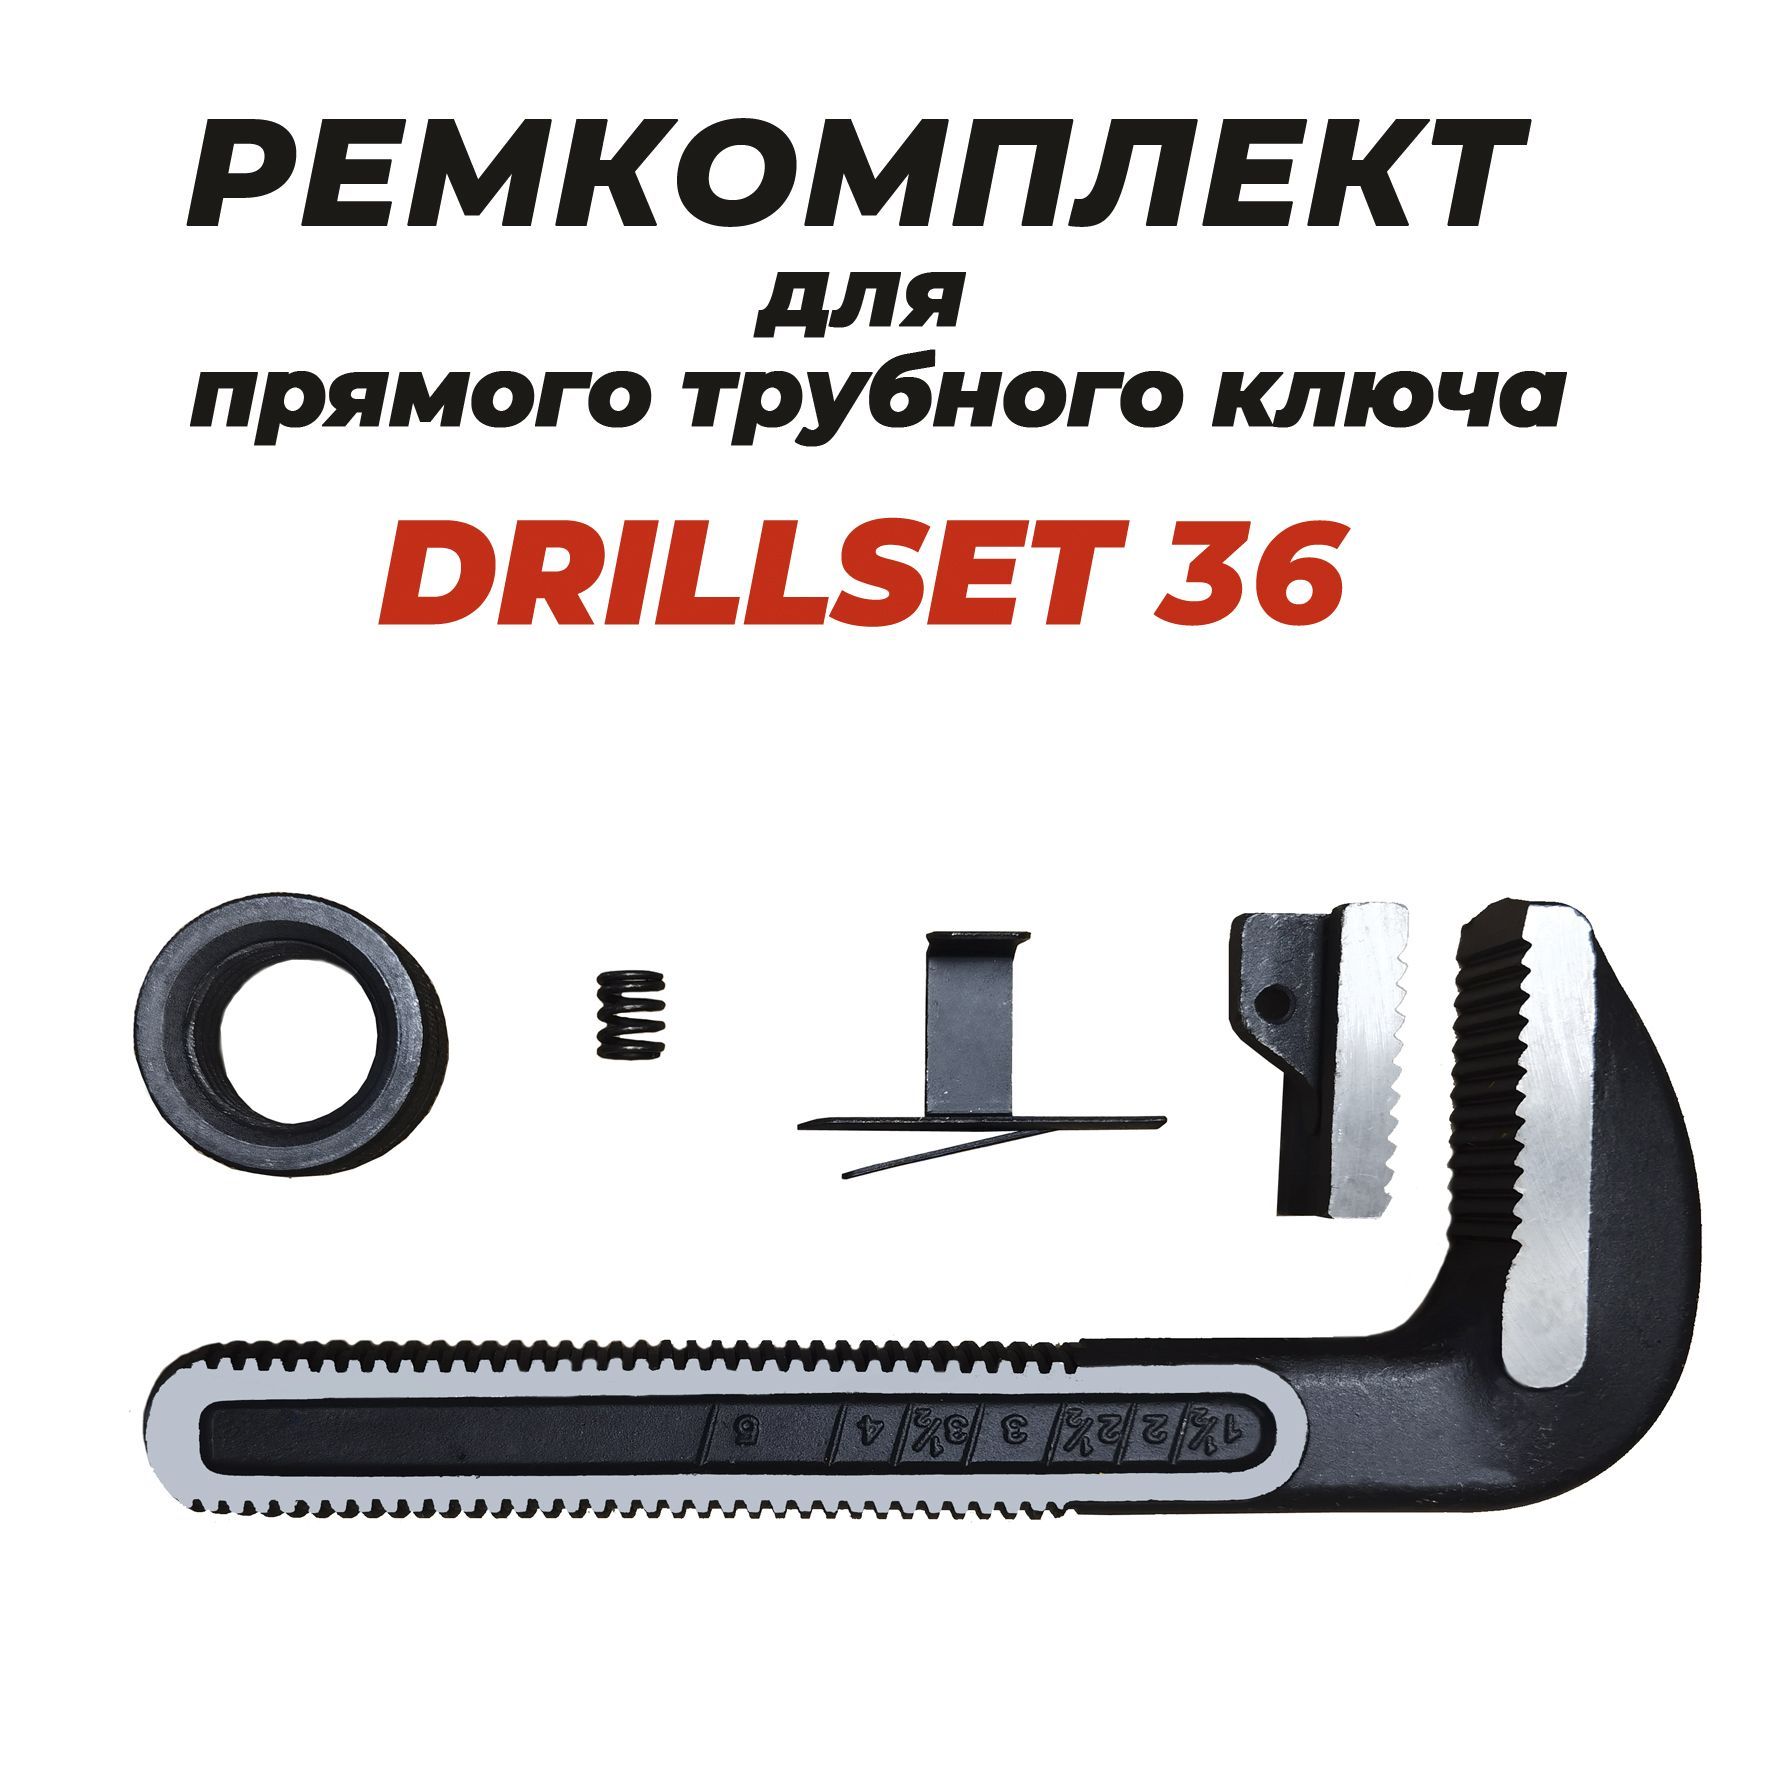 Ремкомплект для прямого трубного ключа DRILLSET36 заклепочник прямого типа jtc 5210